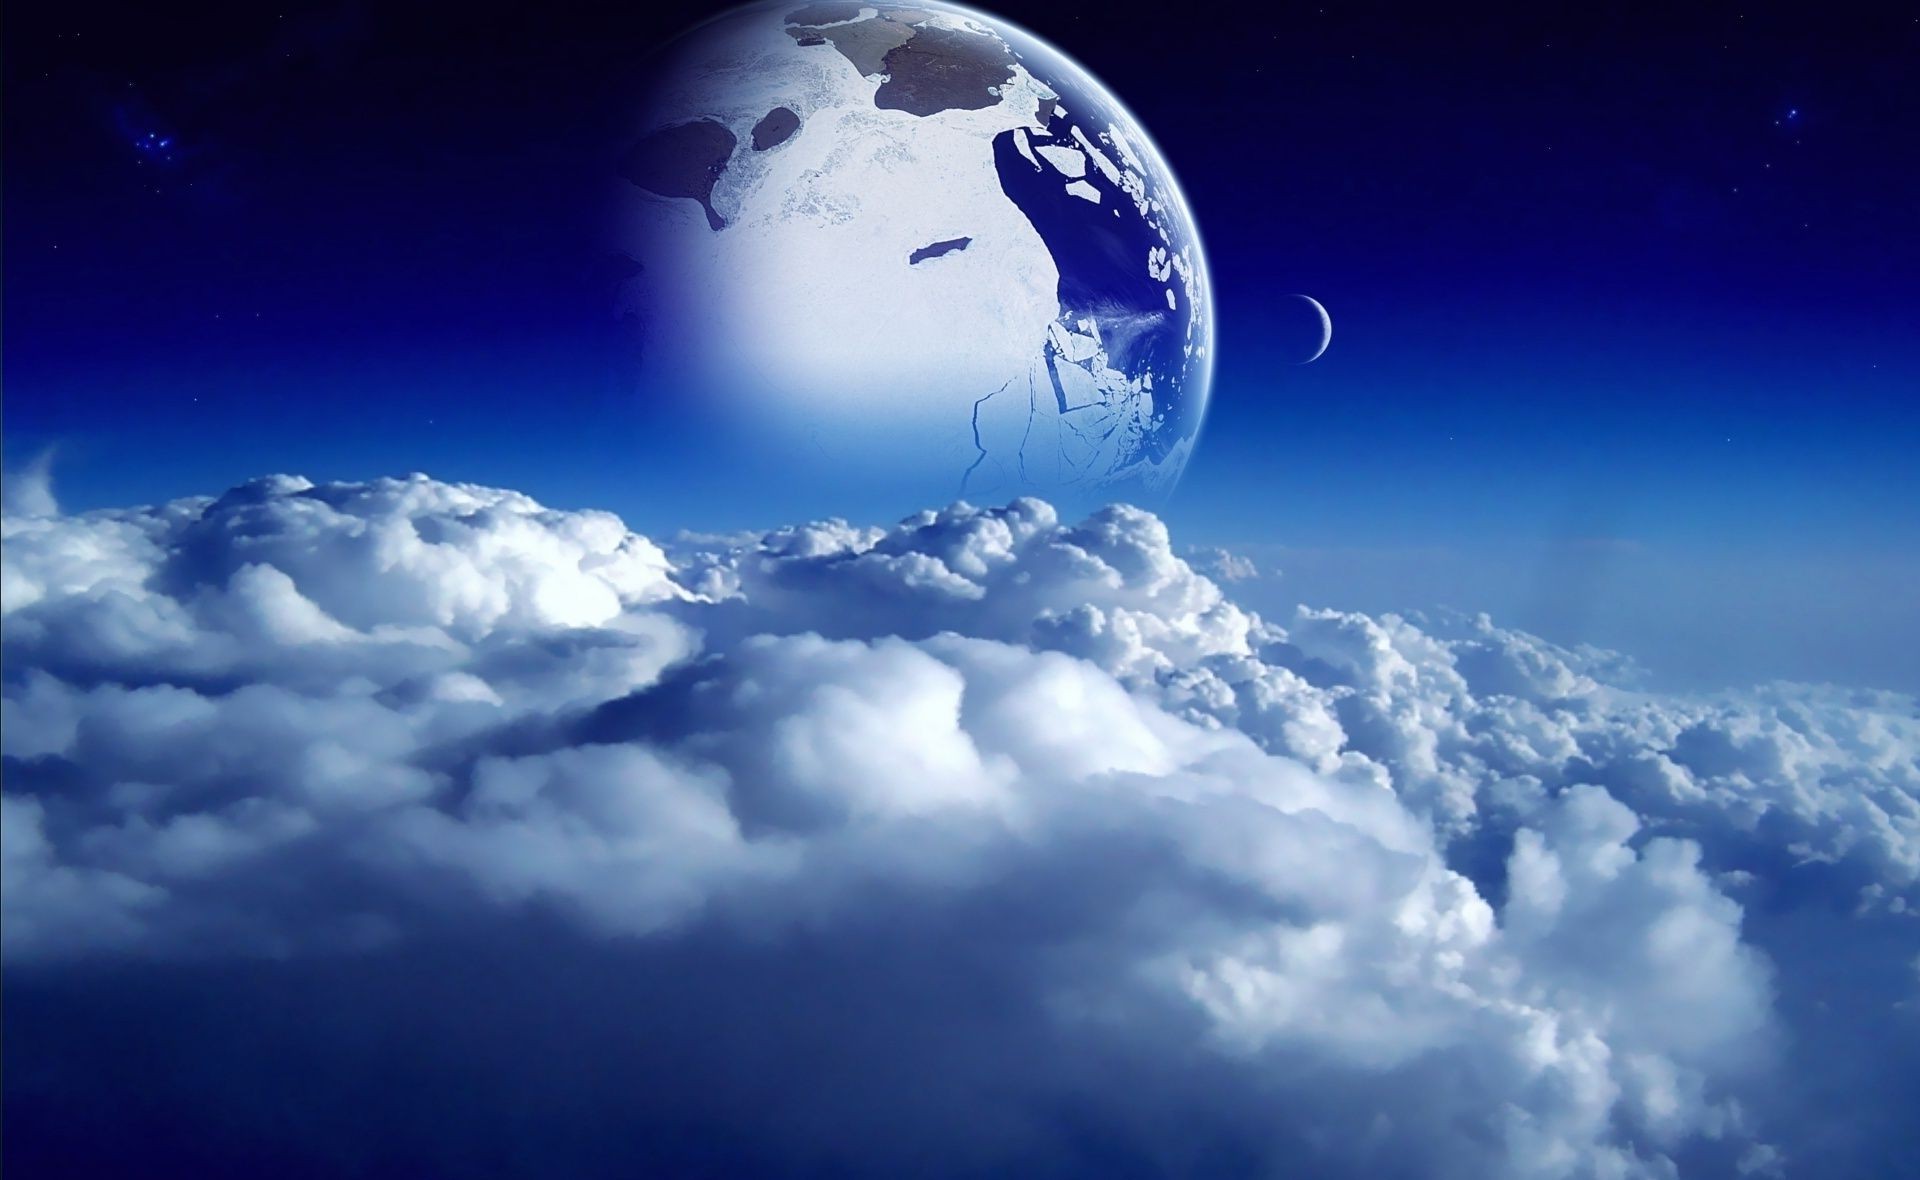 планеты планеты небо шарообразные атмосфера луна пространство свет рабочего стола сферически облако погода природа стратосфера сфера облачно солнце астрономия темный вселенная